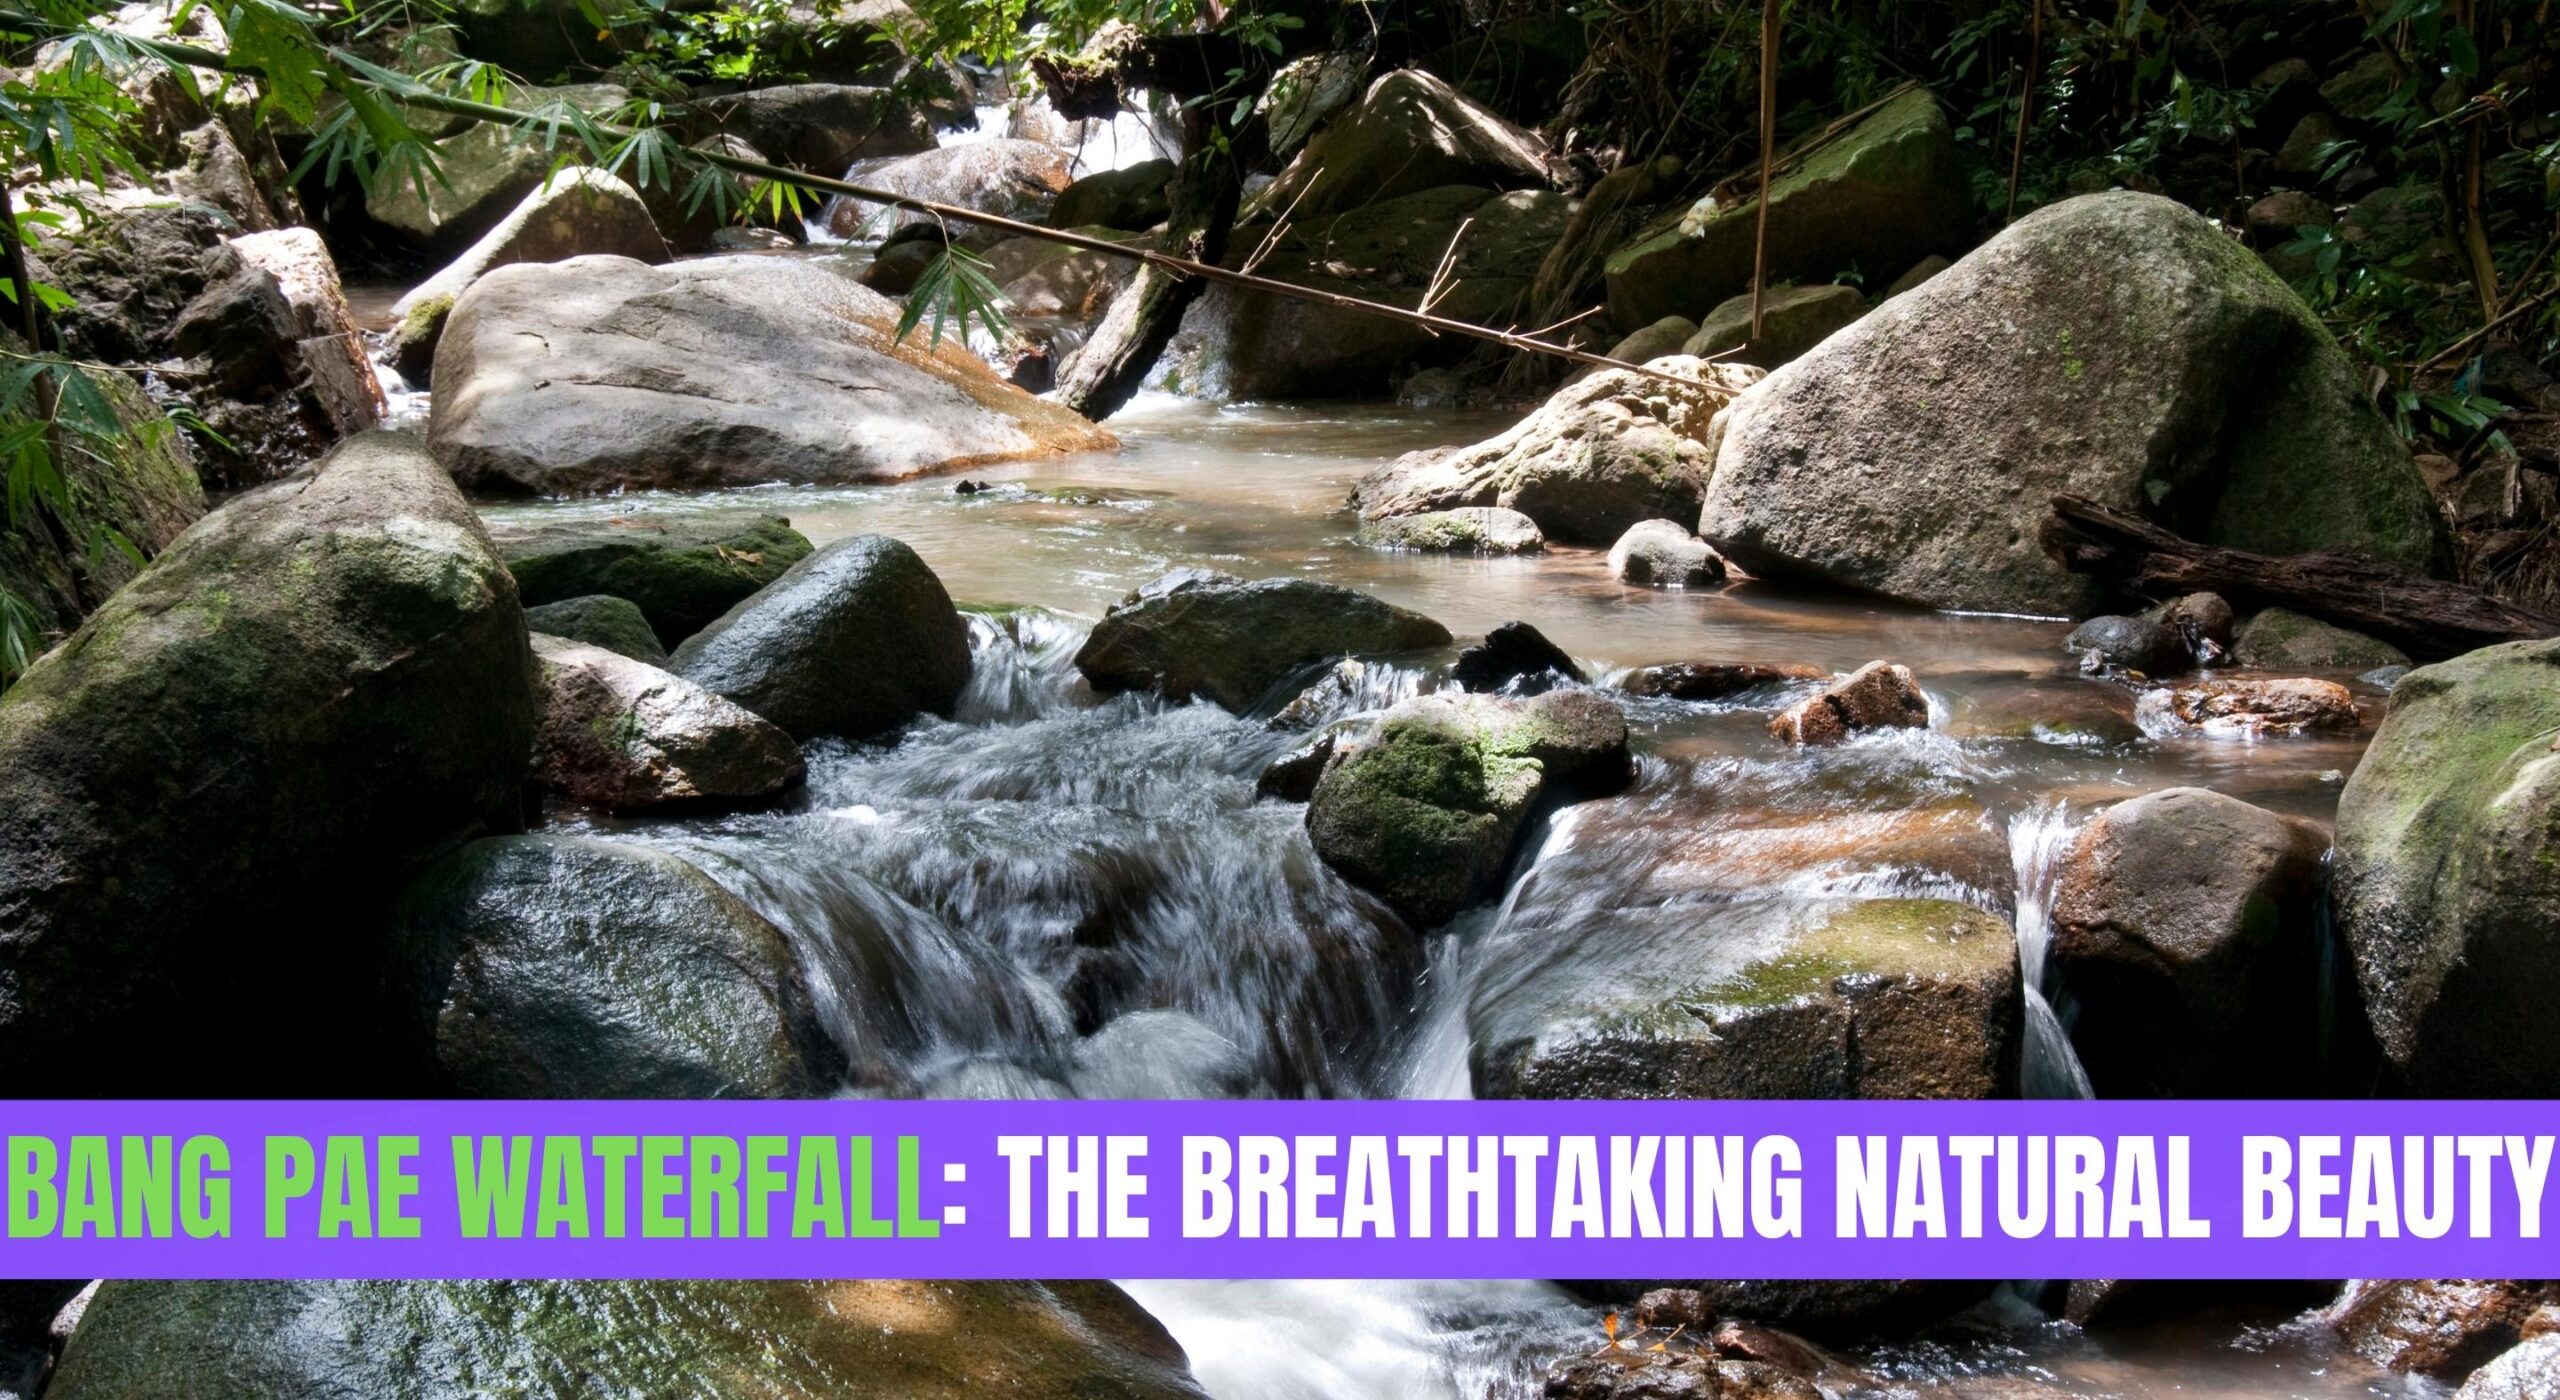 Bang Pae Waterfall: The Breathtaking Natural Beauty